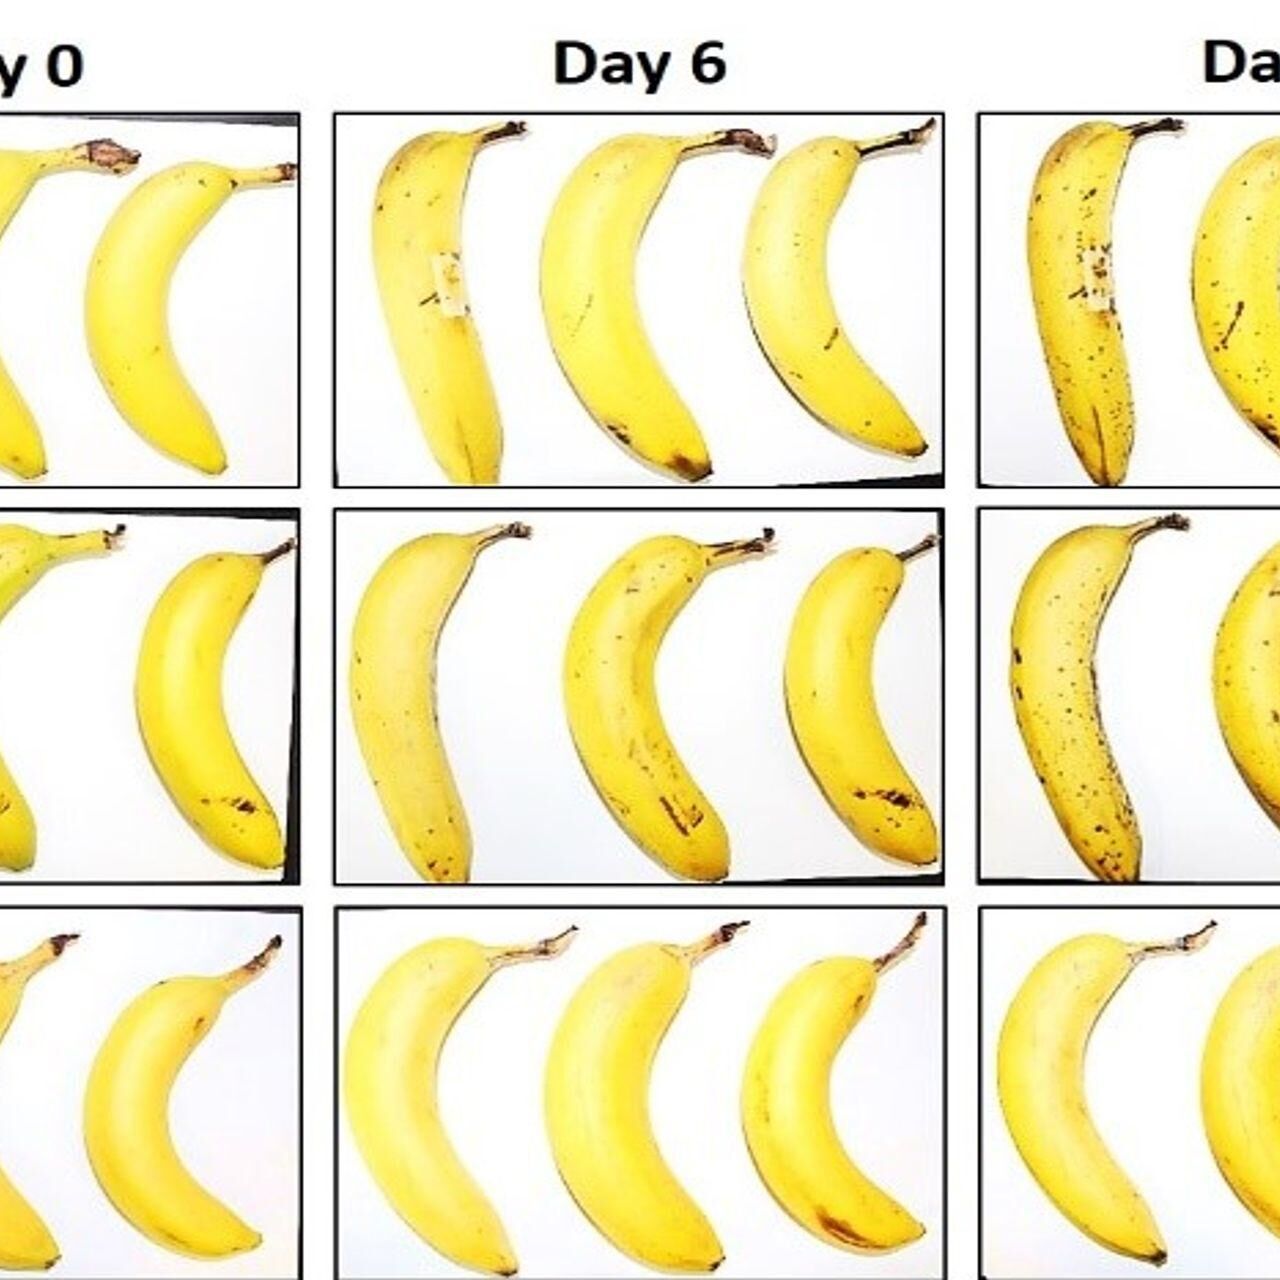 Tre banane sottoposte dall’EMPA e da Lidl Svizzera al test di conservazione con e senza involucro in cellulosa fibrosa dopo zero, 6 e 8 giorni